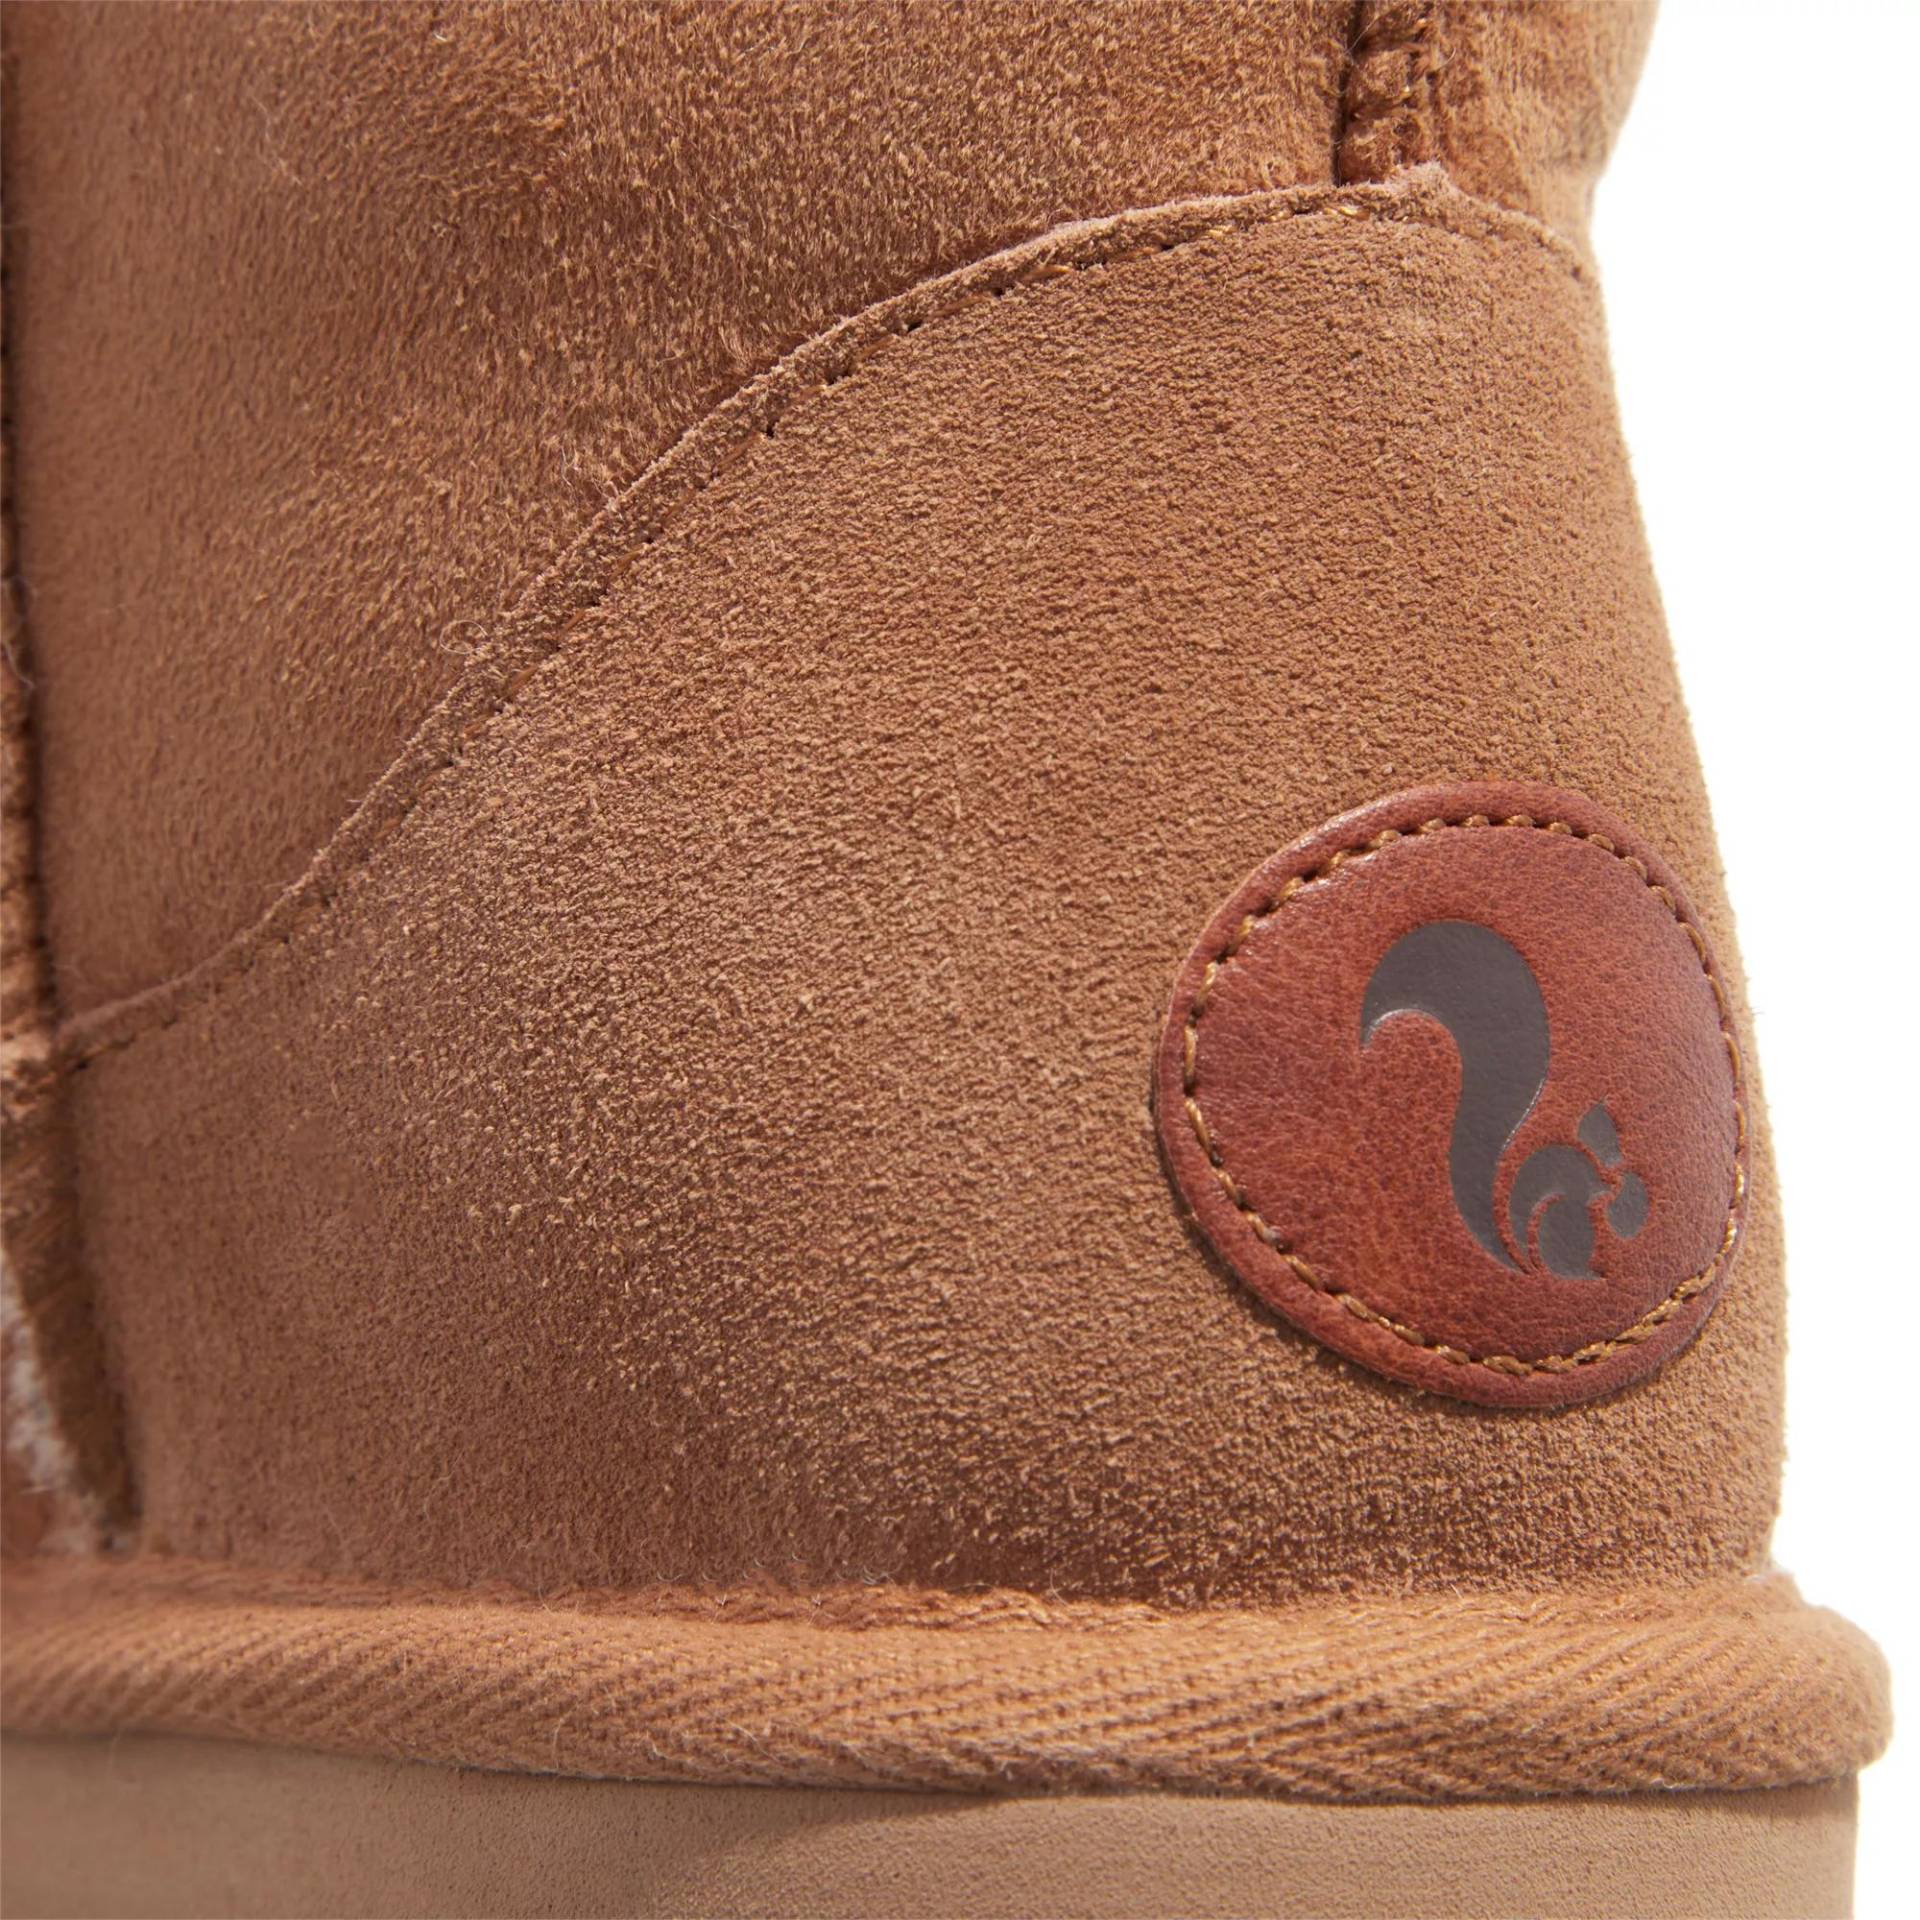 thies Sneakers - thies 1856 ® Classic Sheepskin boot cashew (W) - Gr. 40 (EU) - in Braun - für Damen von thies